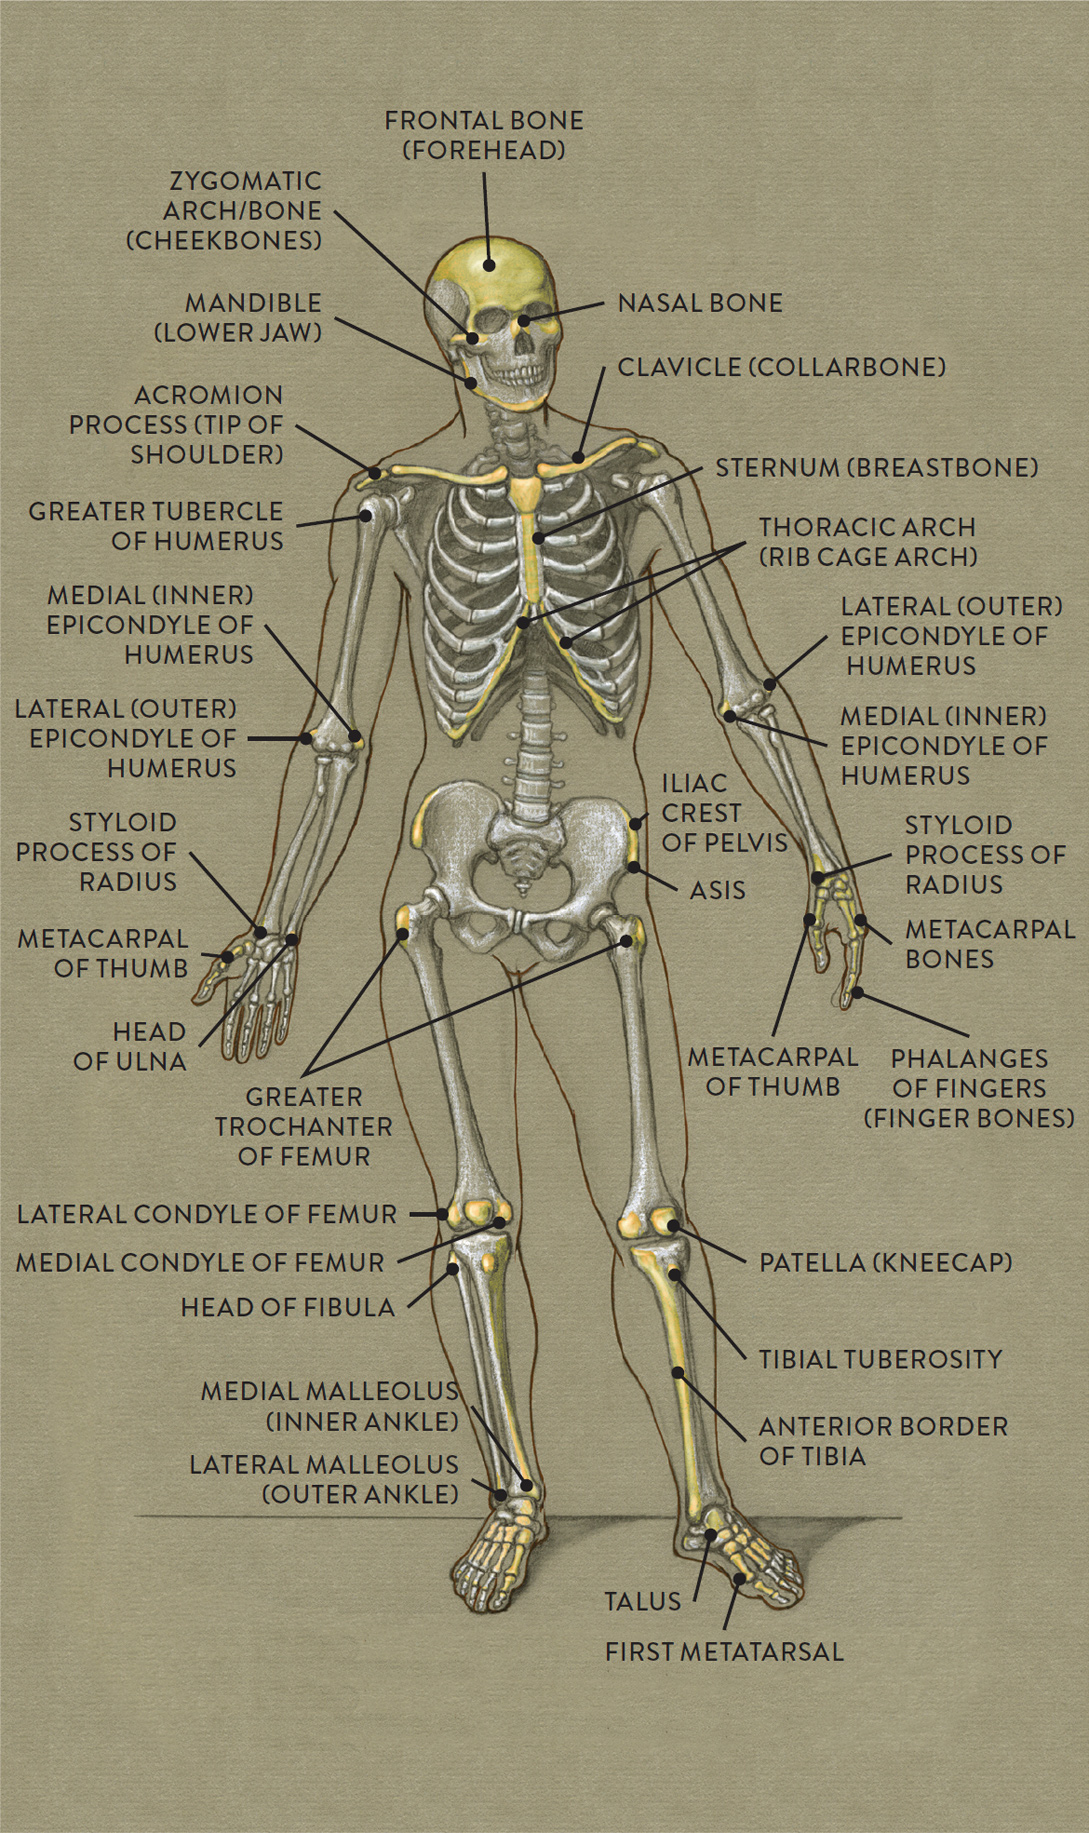 Major Bones In The Human Body / 10 Major Bones In The Human Body